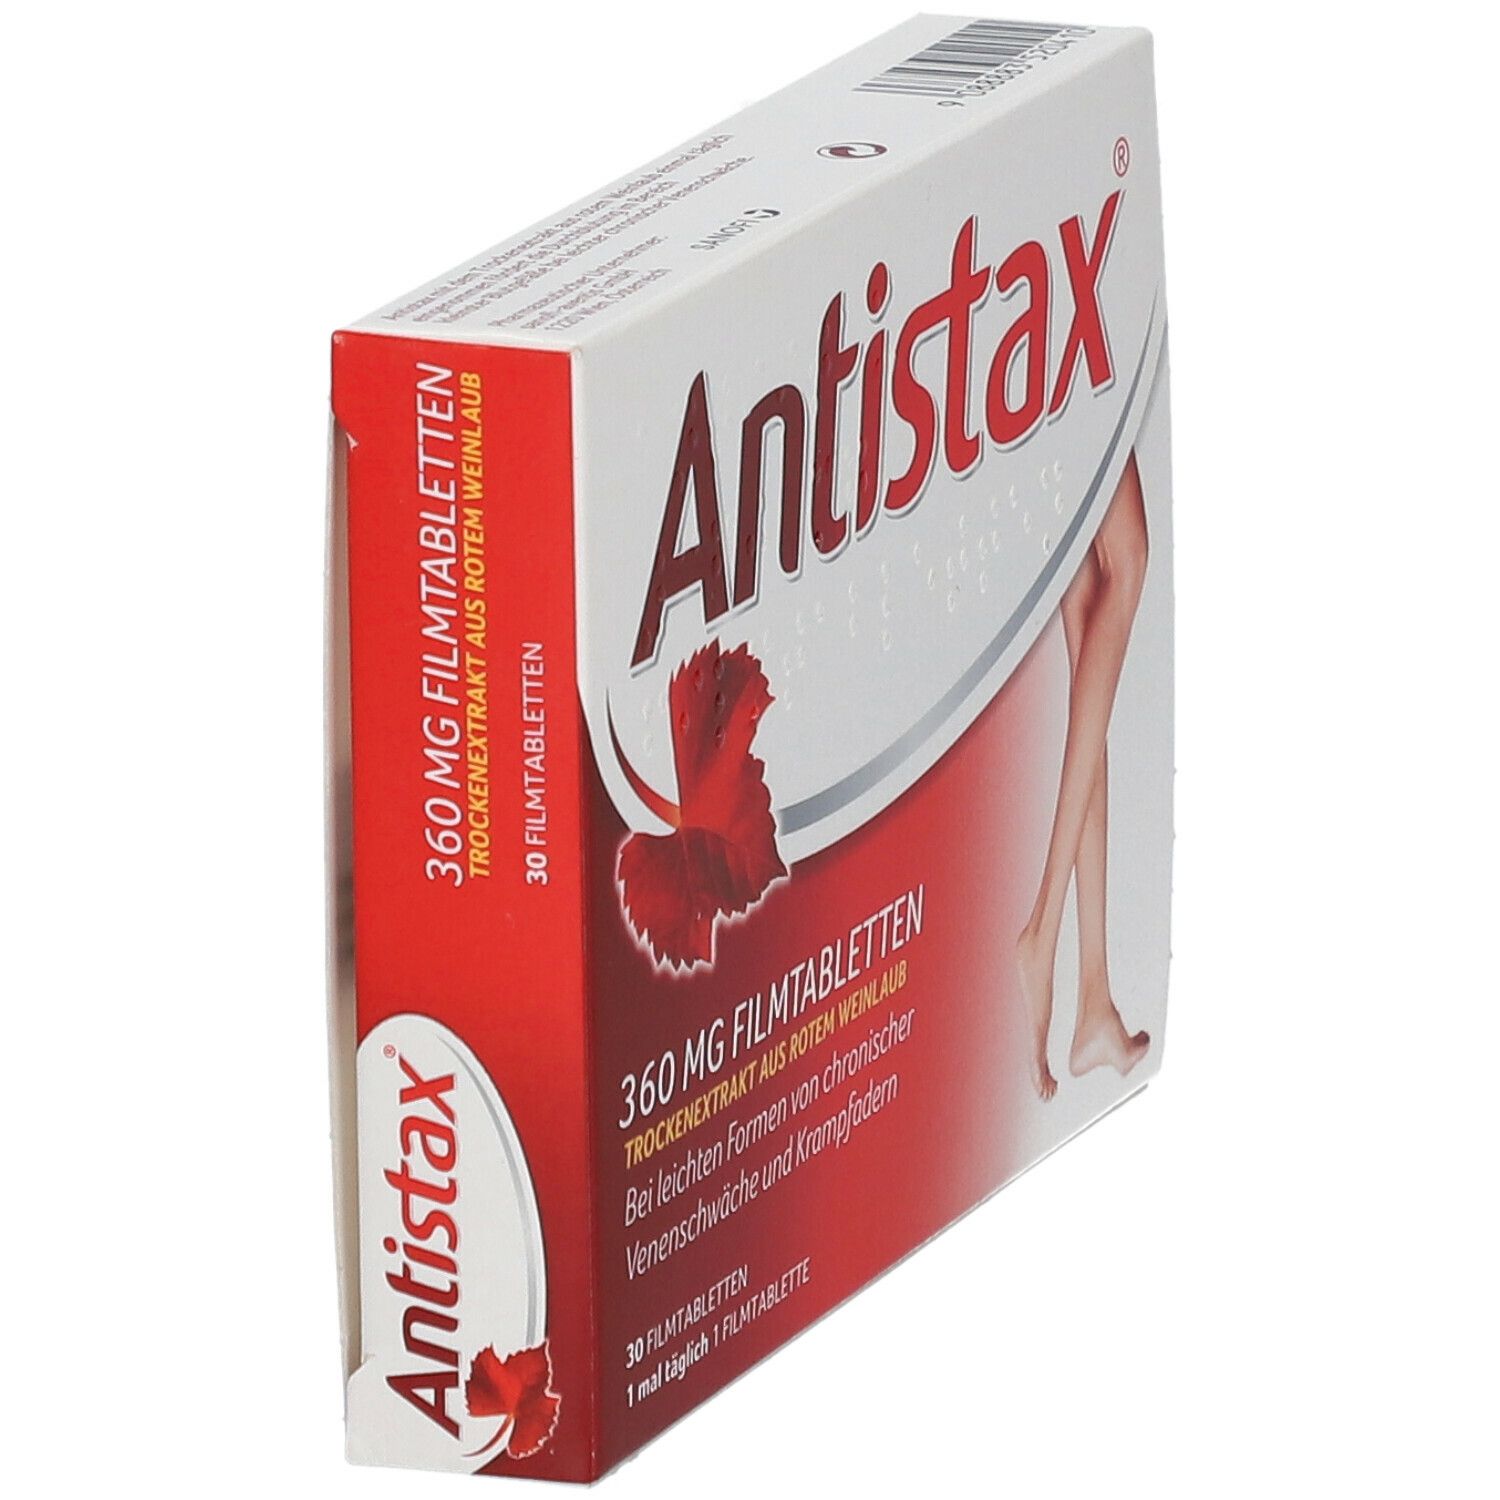 Antistax® 360 mg Filmtabletten